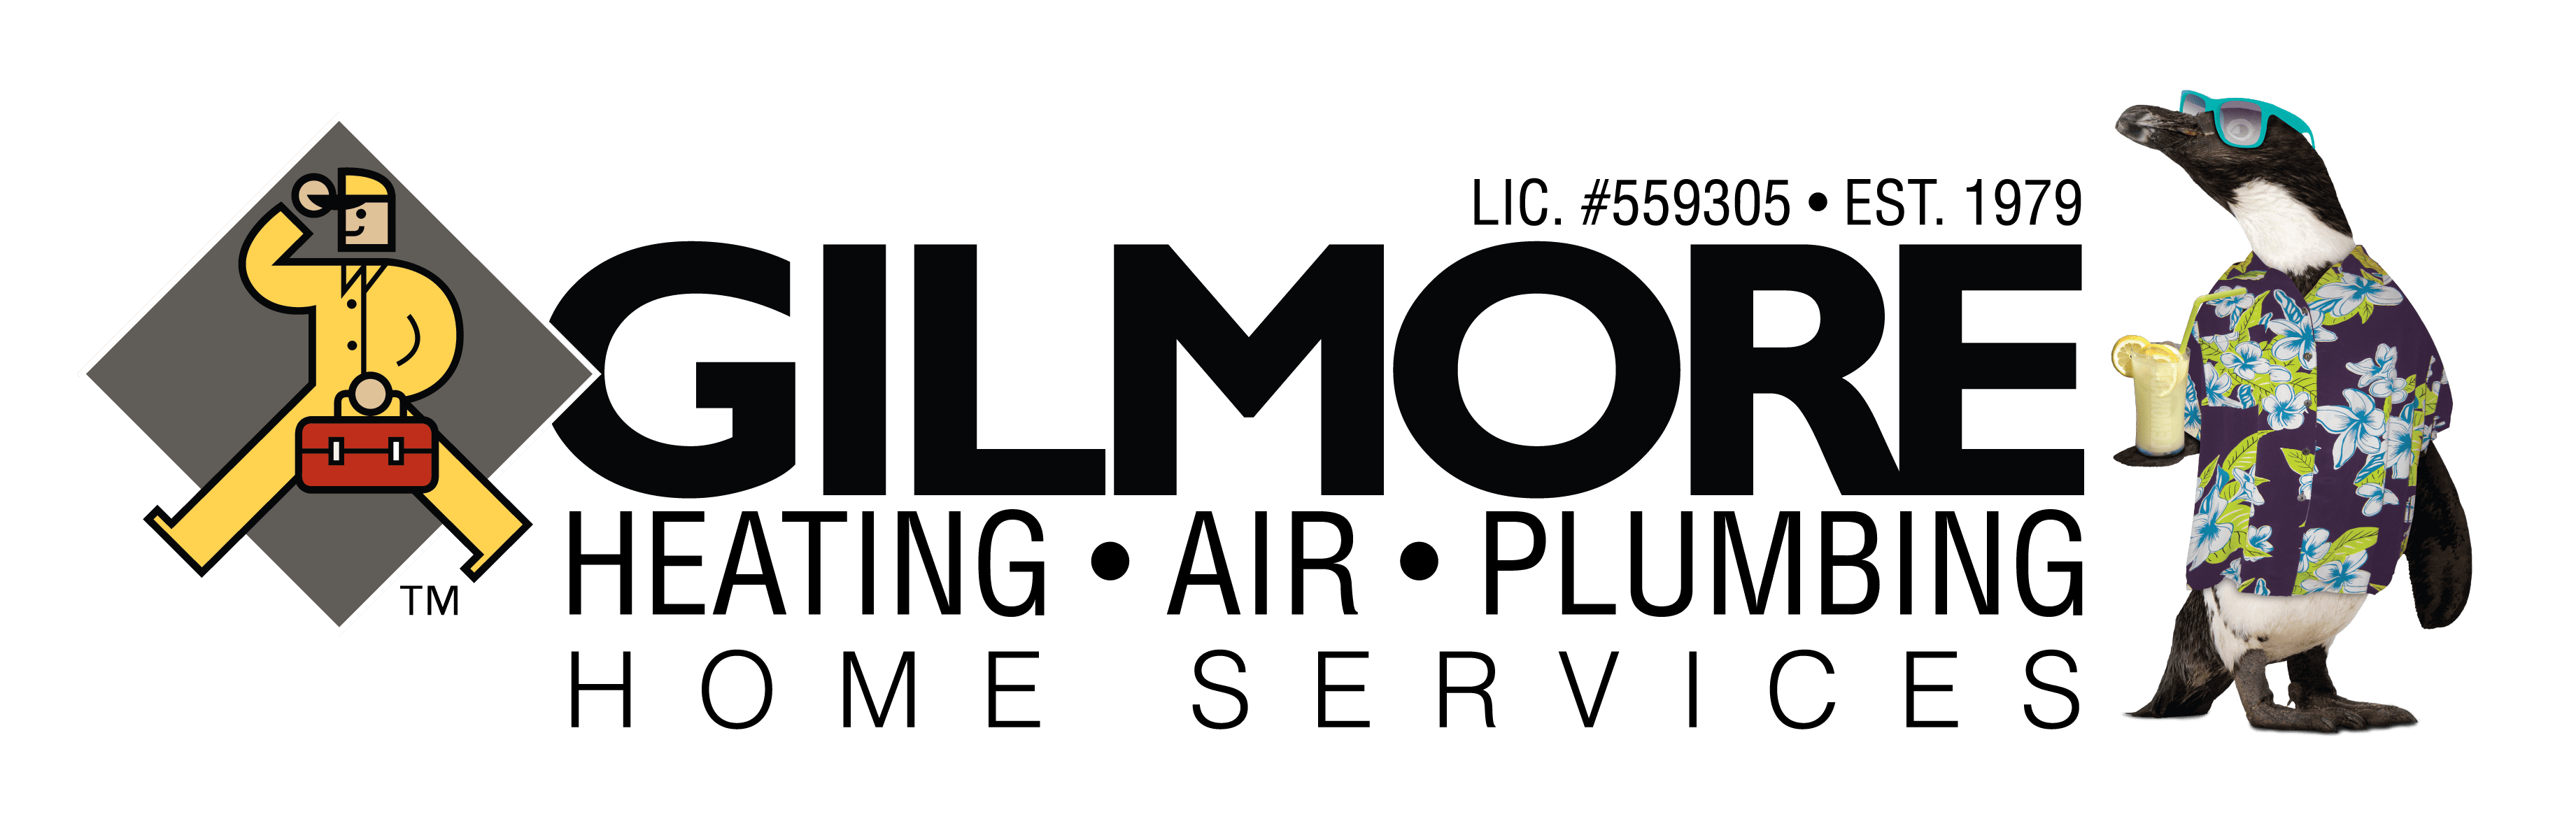 Gilmore Heating, Air, Plumbing logo